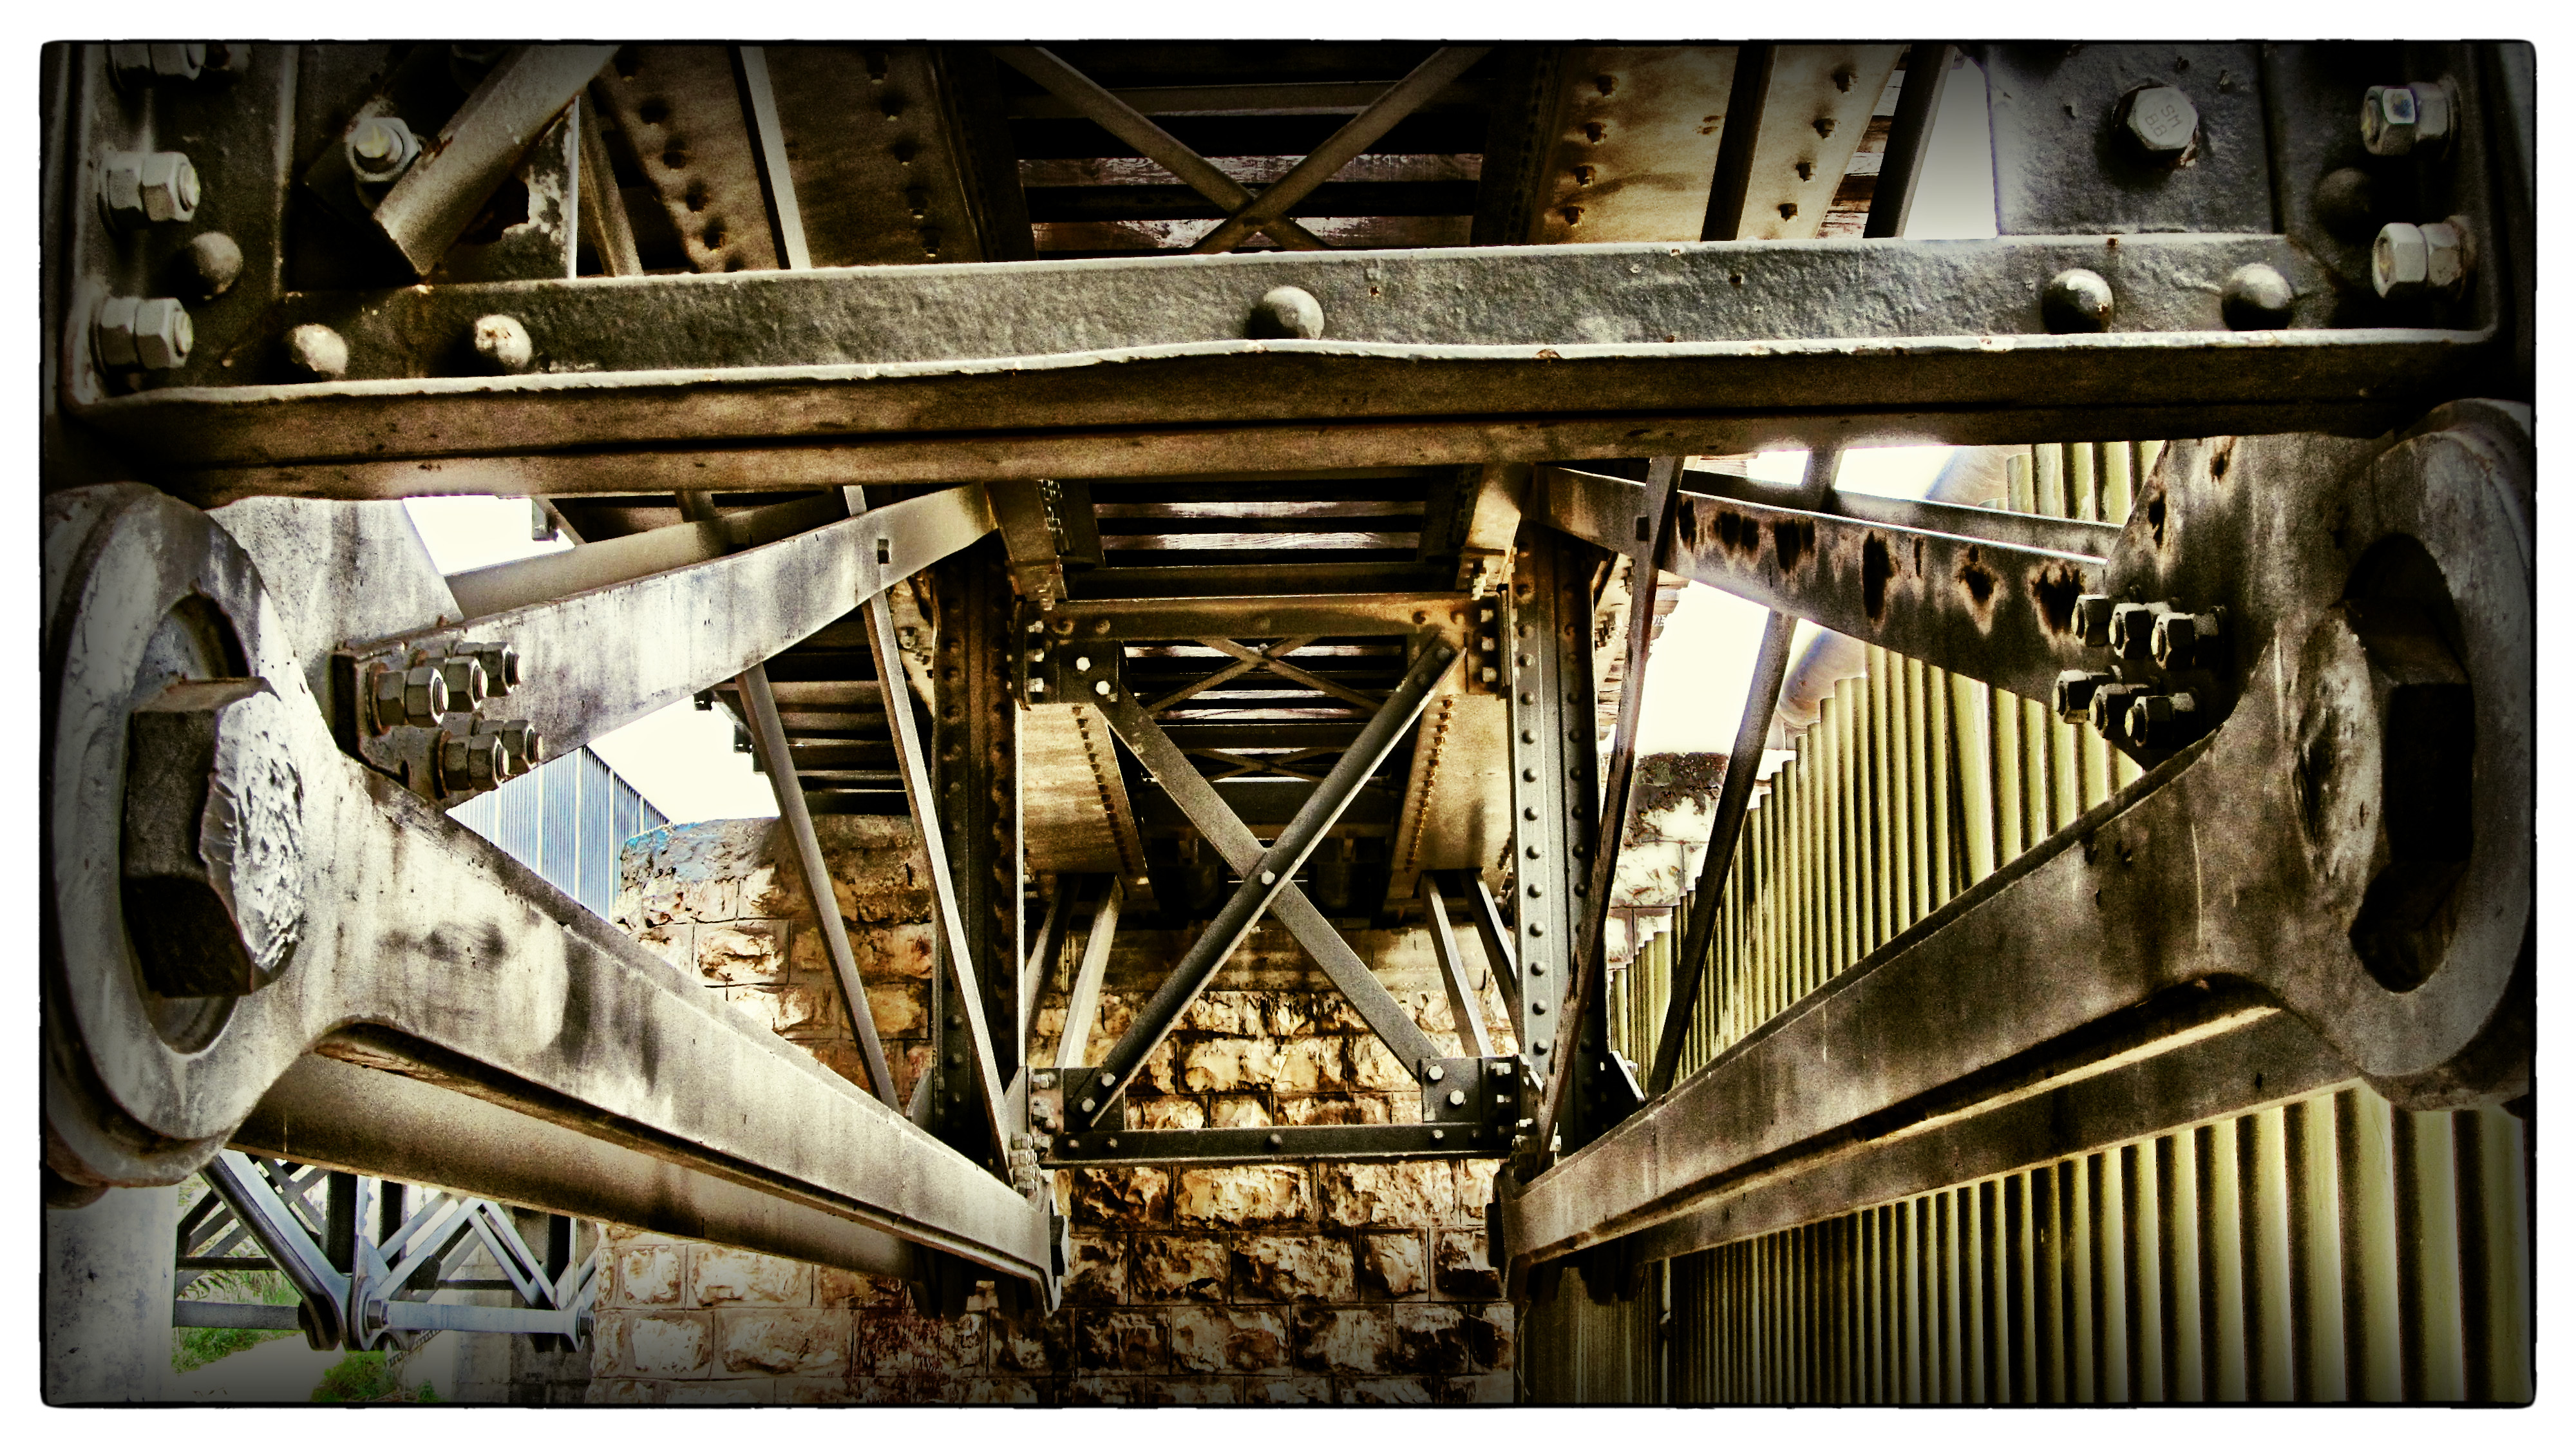 Under the bridge photo